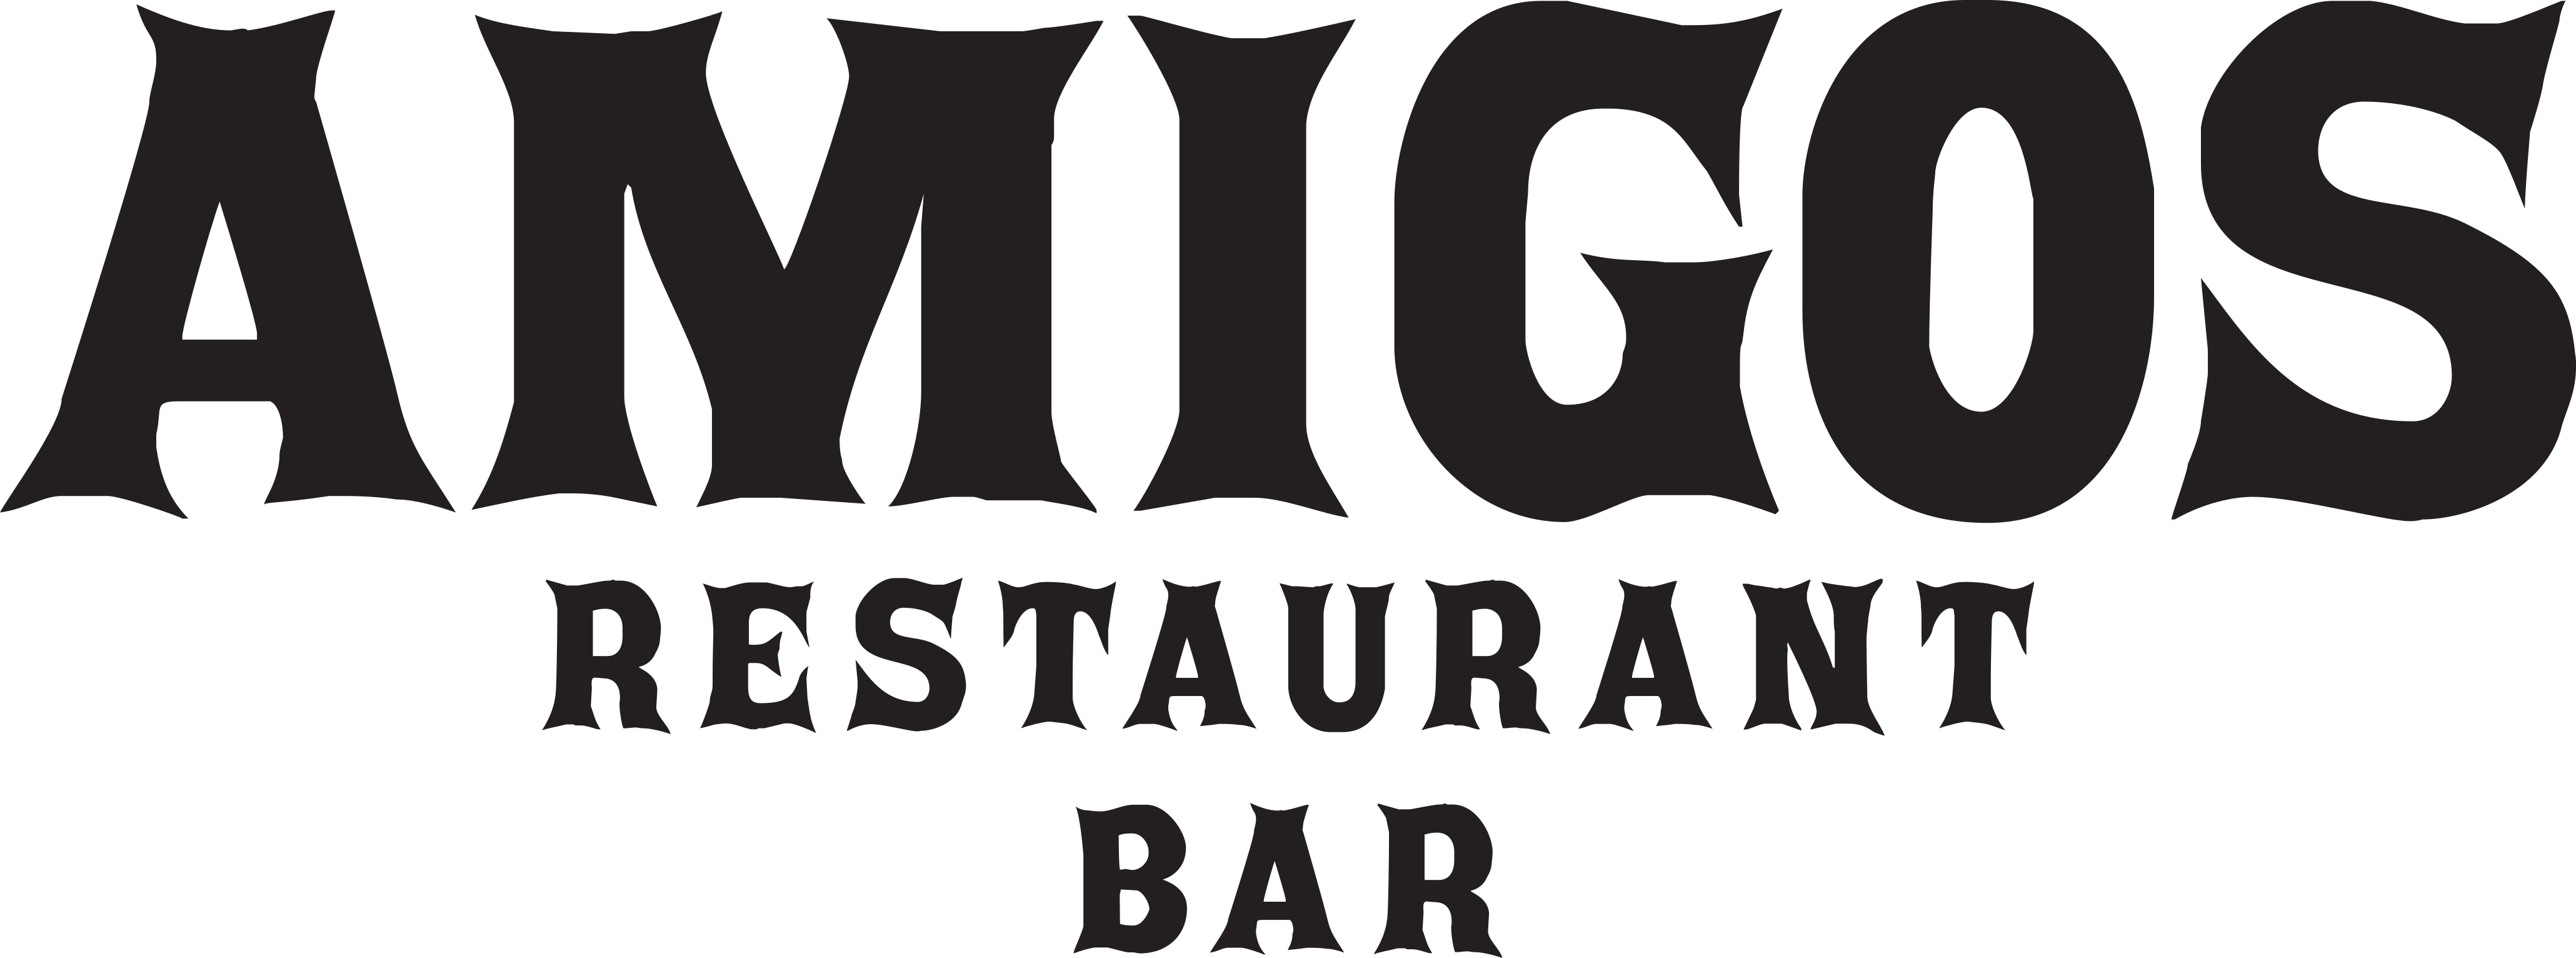 Meksikansk Restaurant i Bergen - Glutenfri Meny! logo